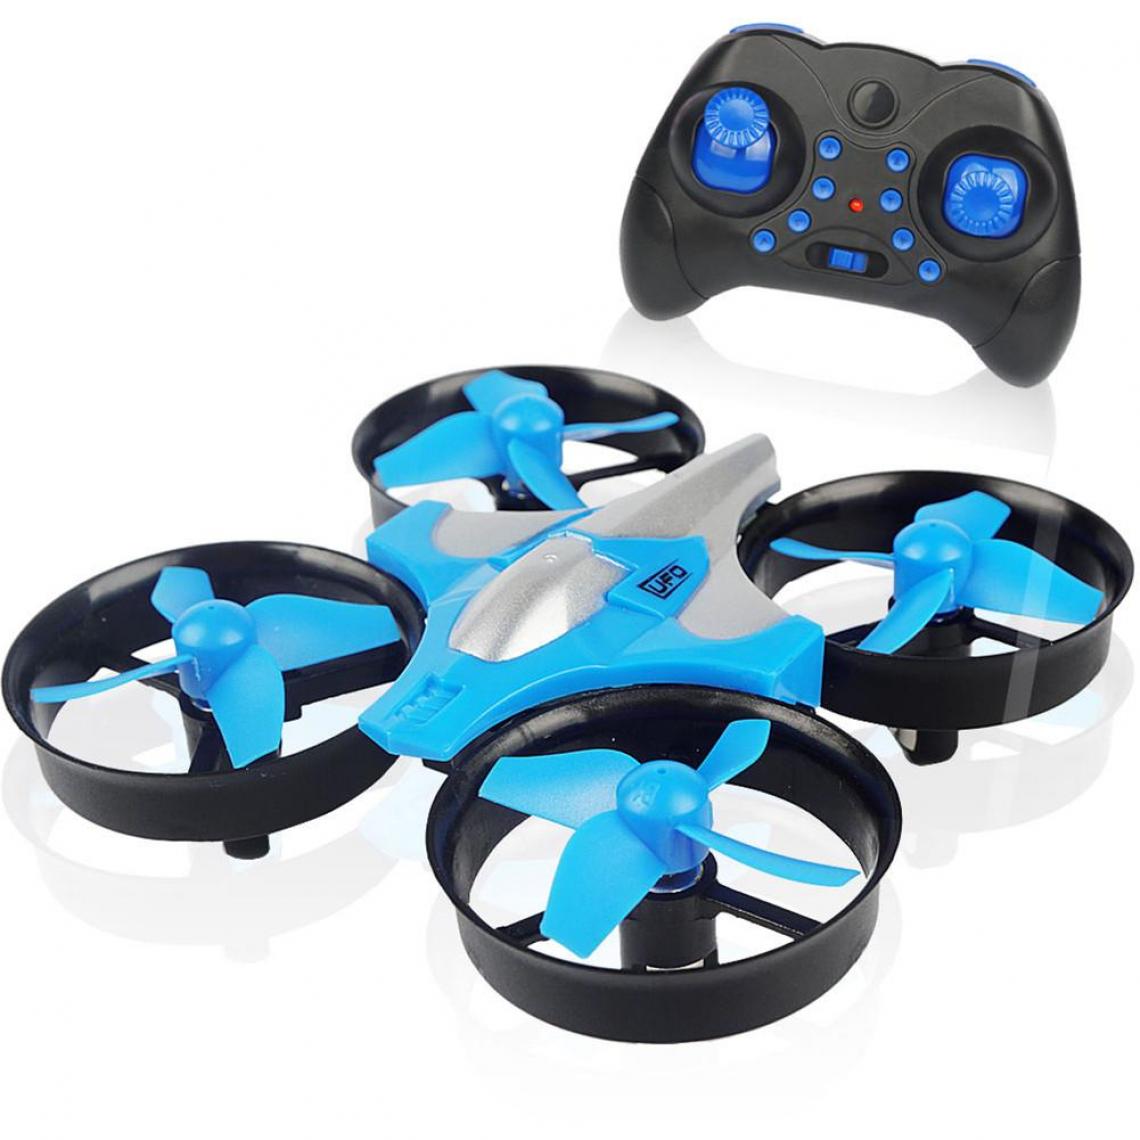 Universal - Mini drone 2.4G 4 canaux 6 axes vitesse 3D flip mode sans fil RC jouets sans mains cadeaux RTF avec télécommande E010 H8 H36 H36F | RC Helicopter(Bleu) - Drone